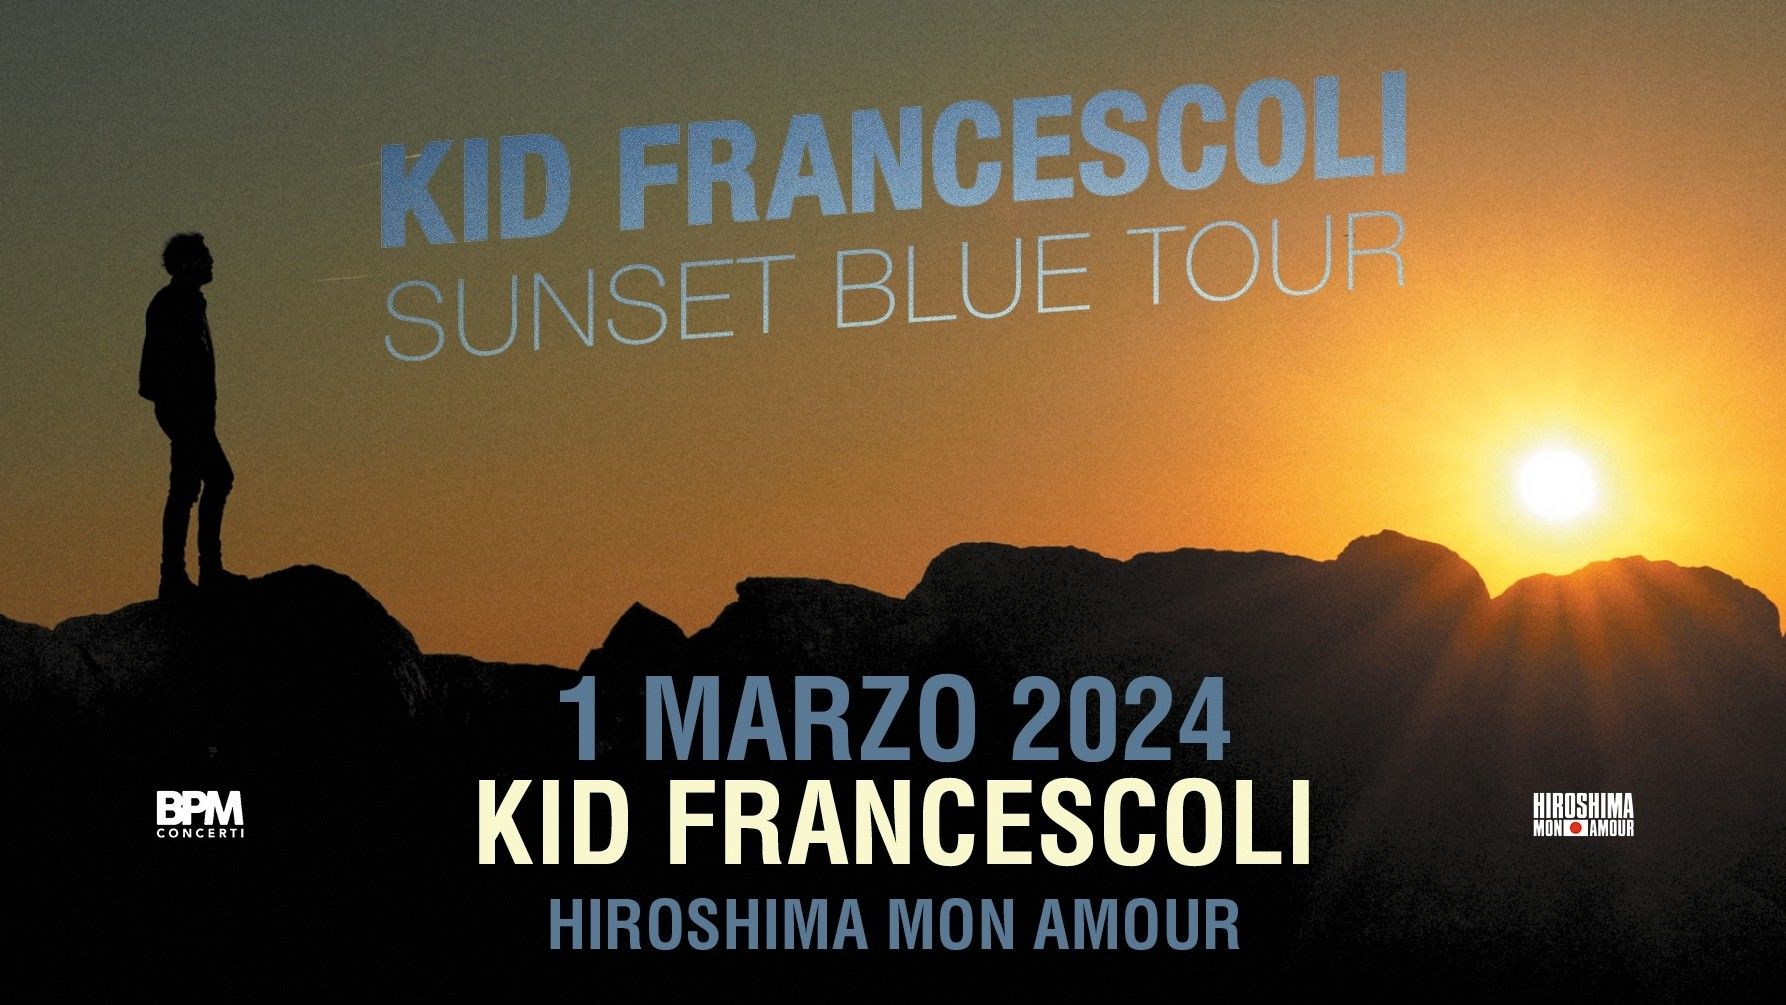 Kid Francescoli "Sunset Blue Tour"